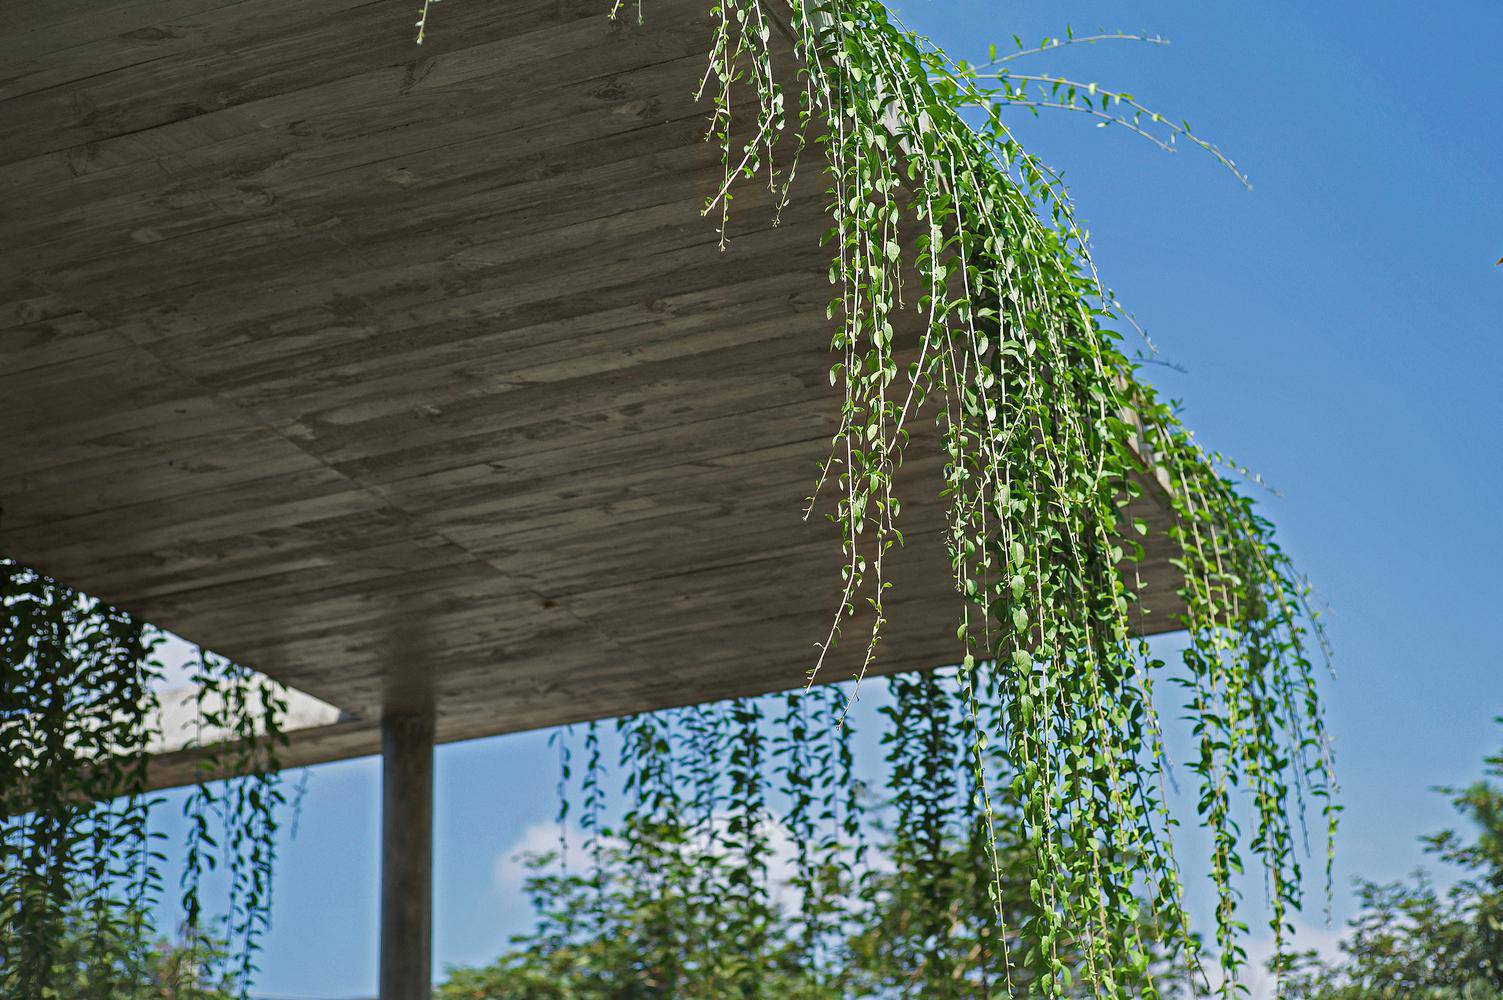 Biệt thự dùng cây xanh làm mái và hiên khiến báo nước ngoài hết lời khen ngợi - 13 - kythuatcanhtac.com